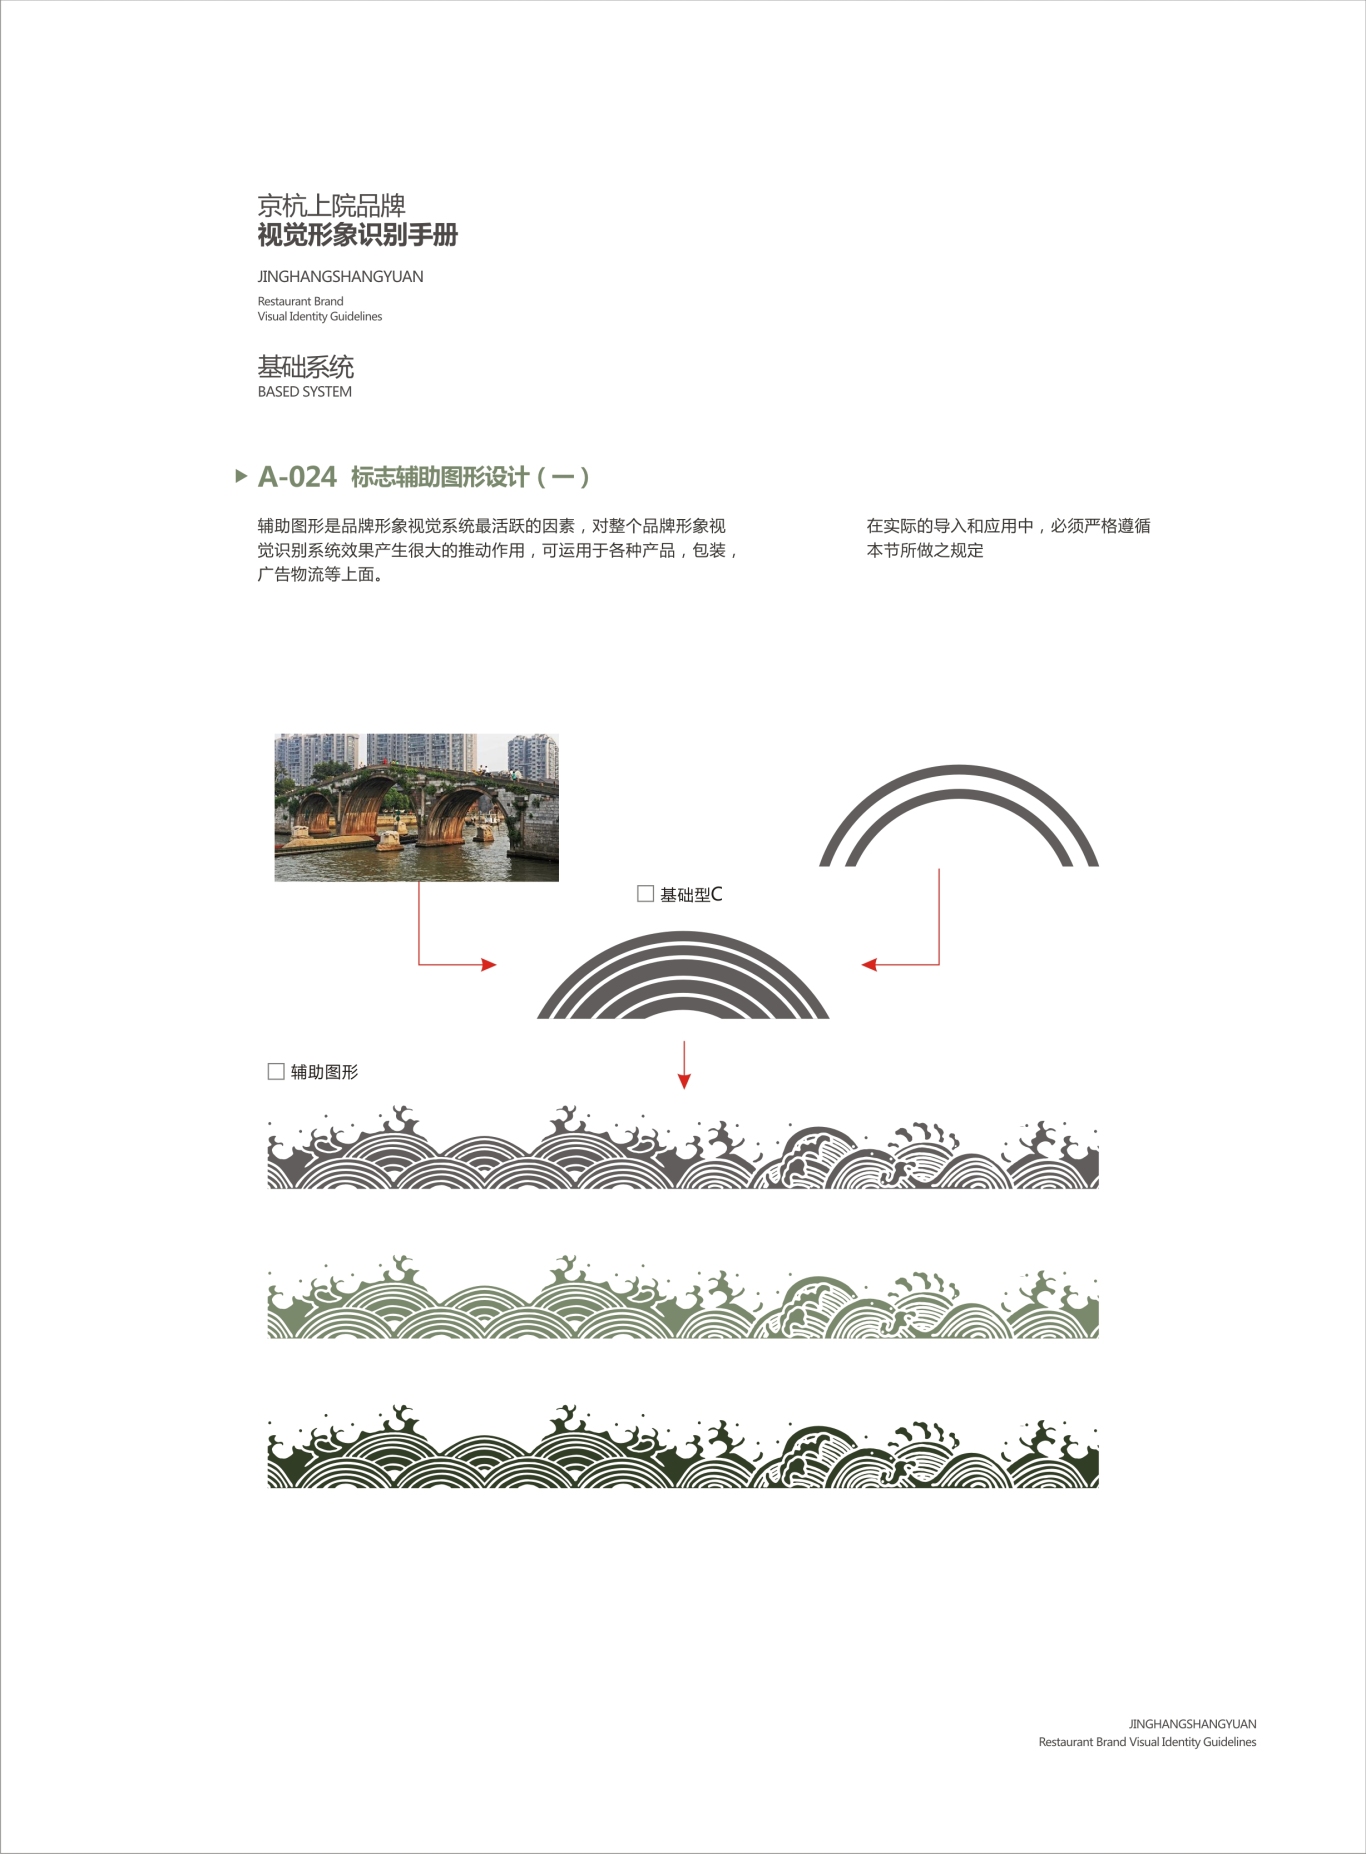 星级私人会所京杭上院VI设计图26